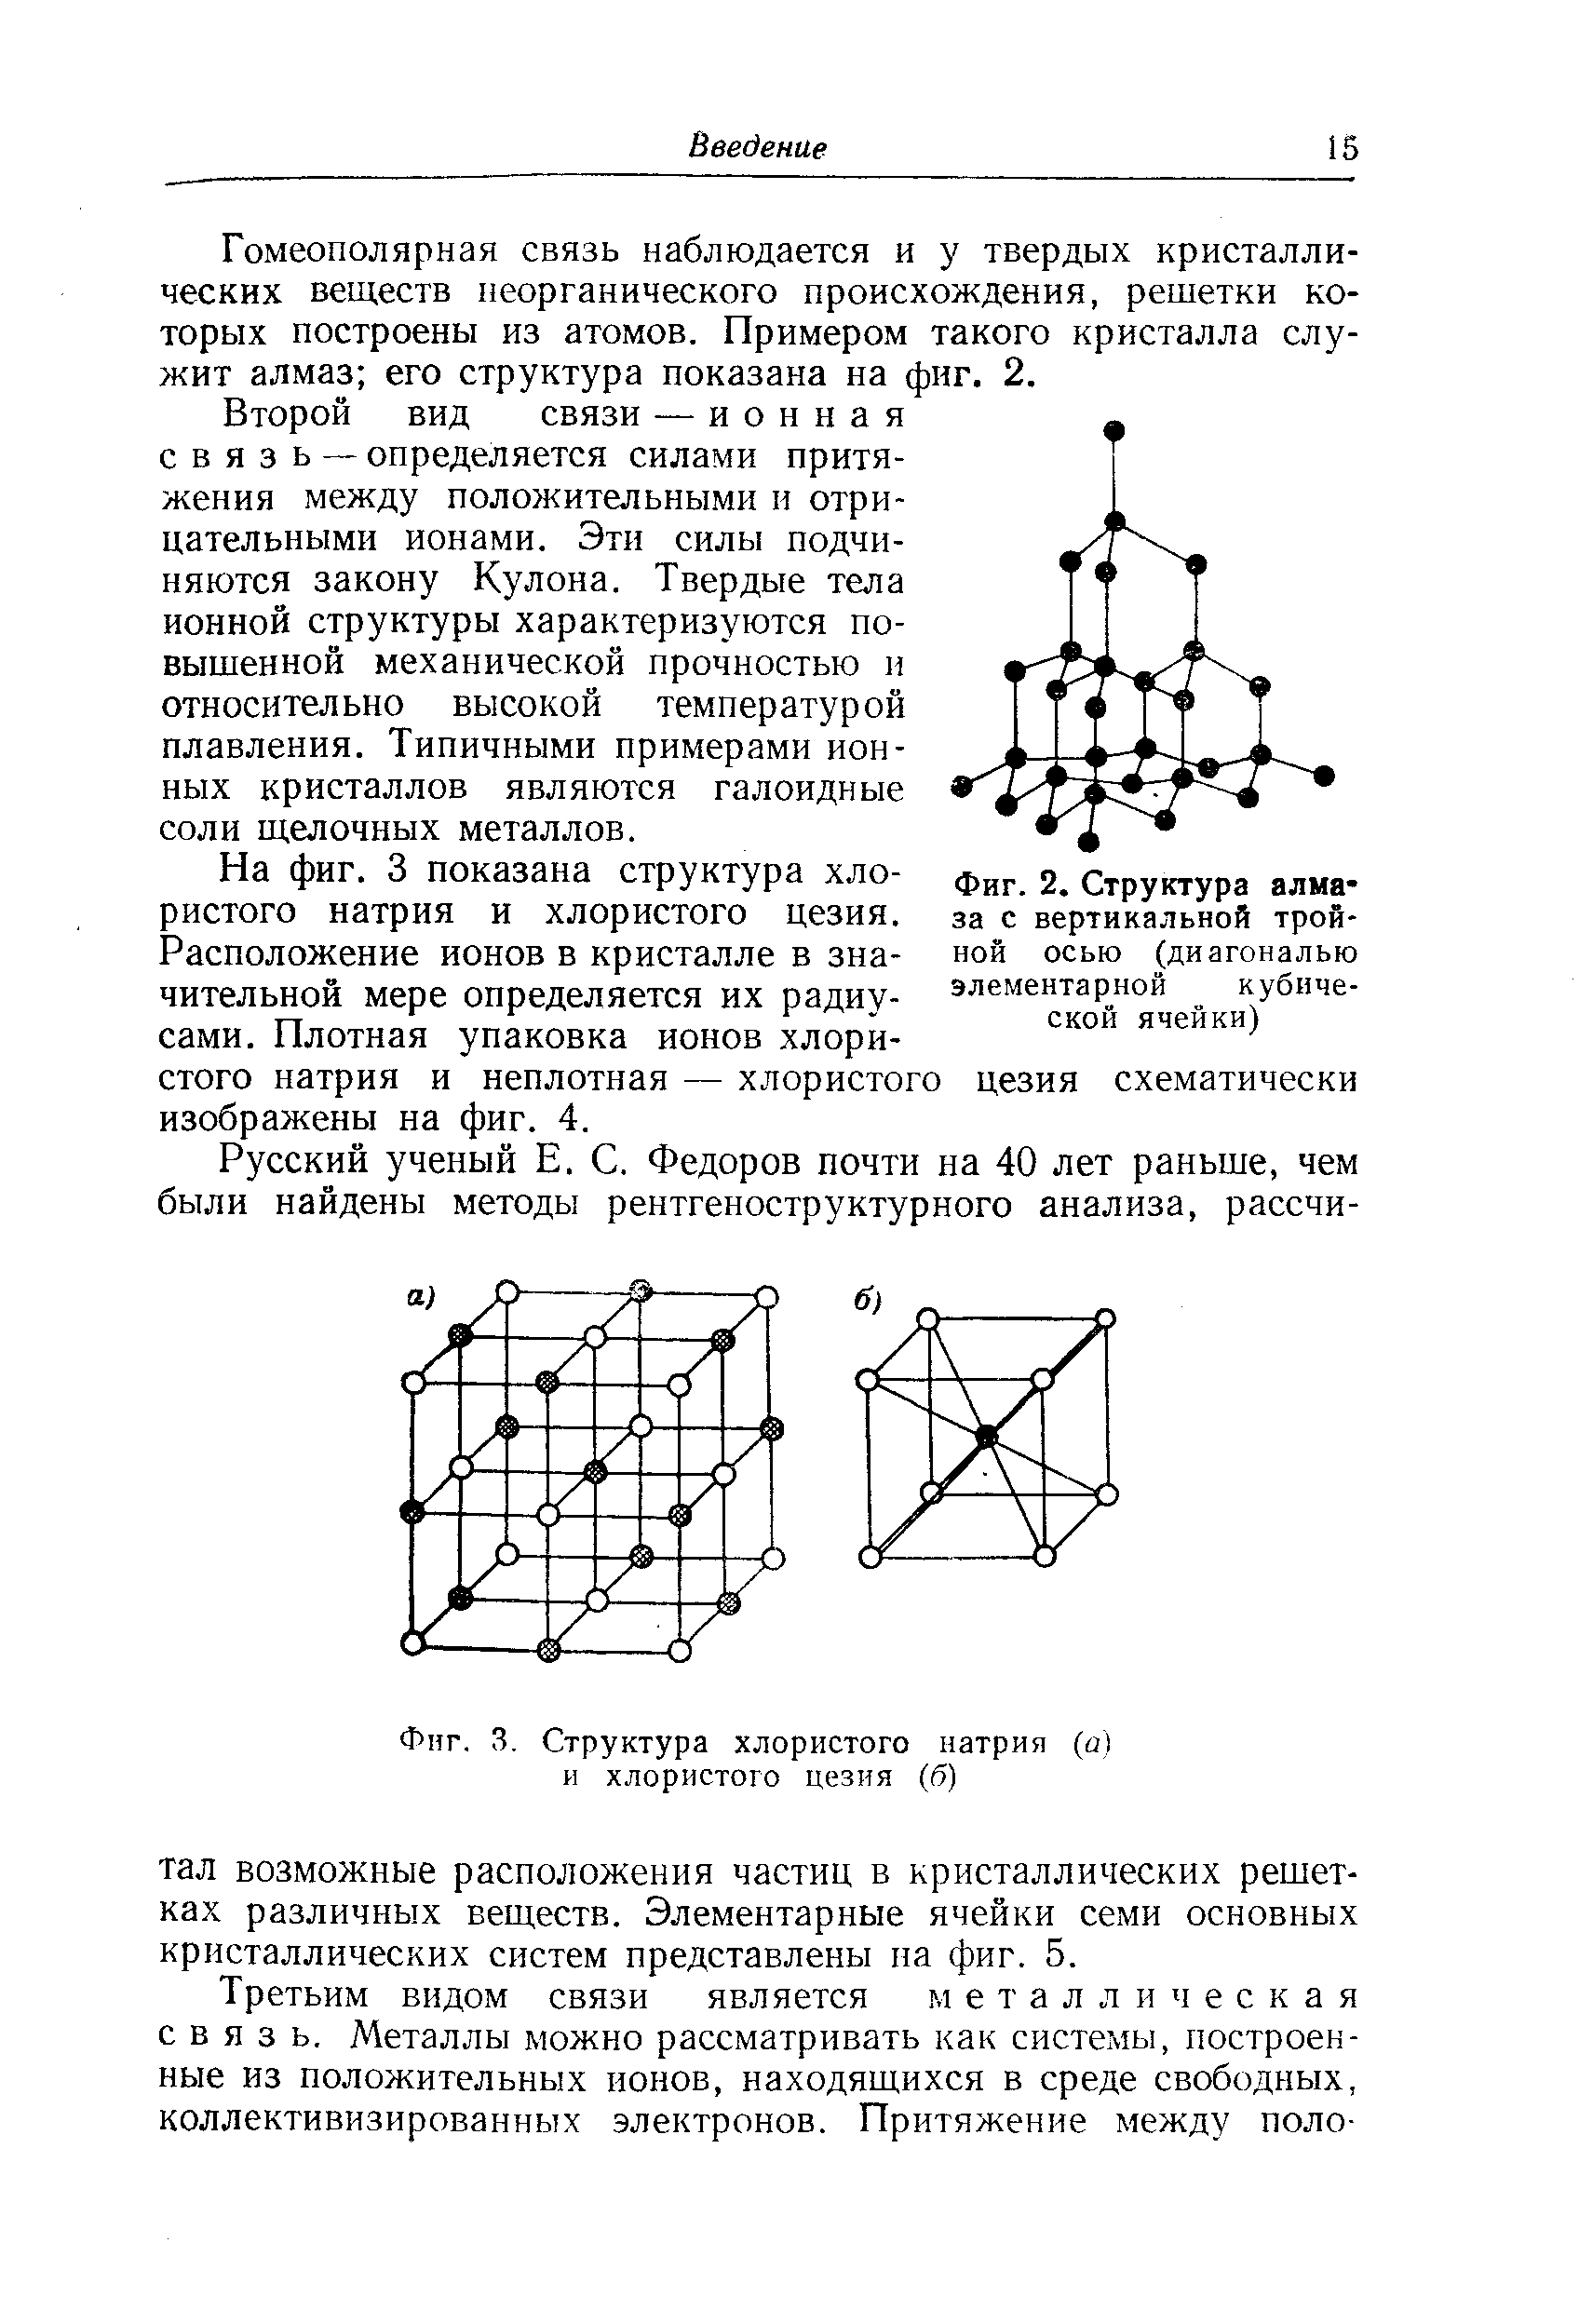 Фиг. 3. Структура <a href="/info/18151">хлористого натрия</a> (а) и хлористого цезия (б)
